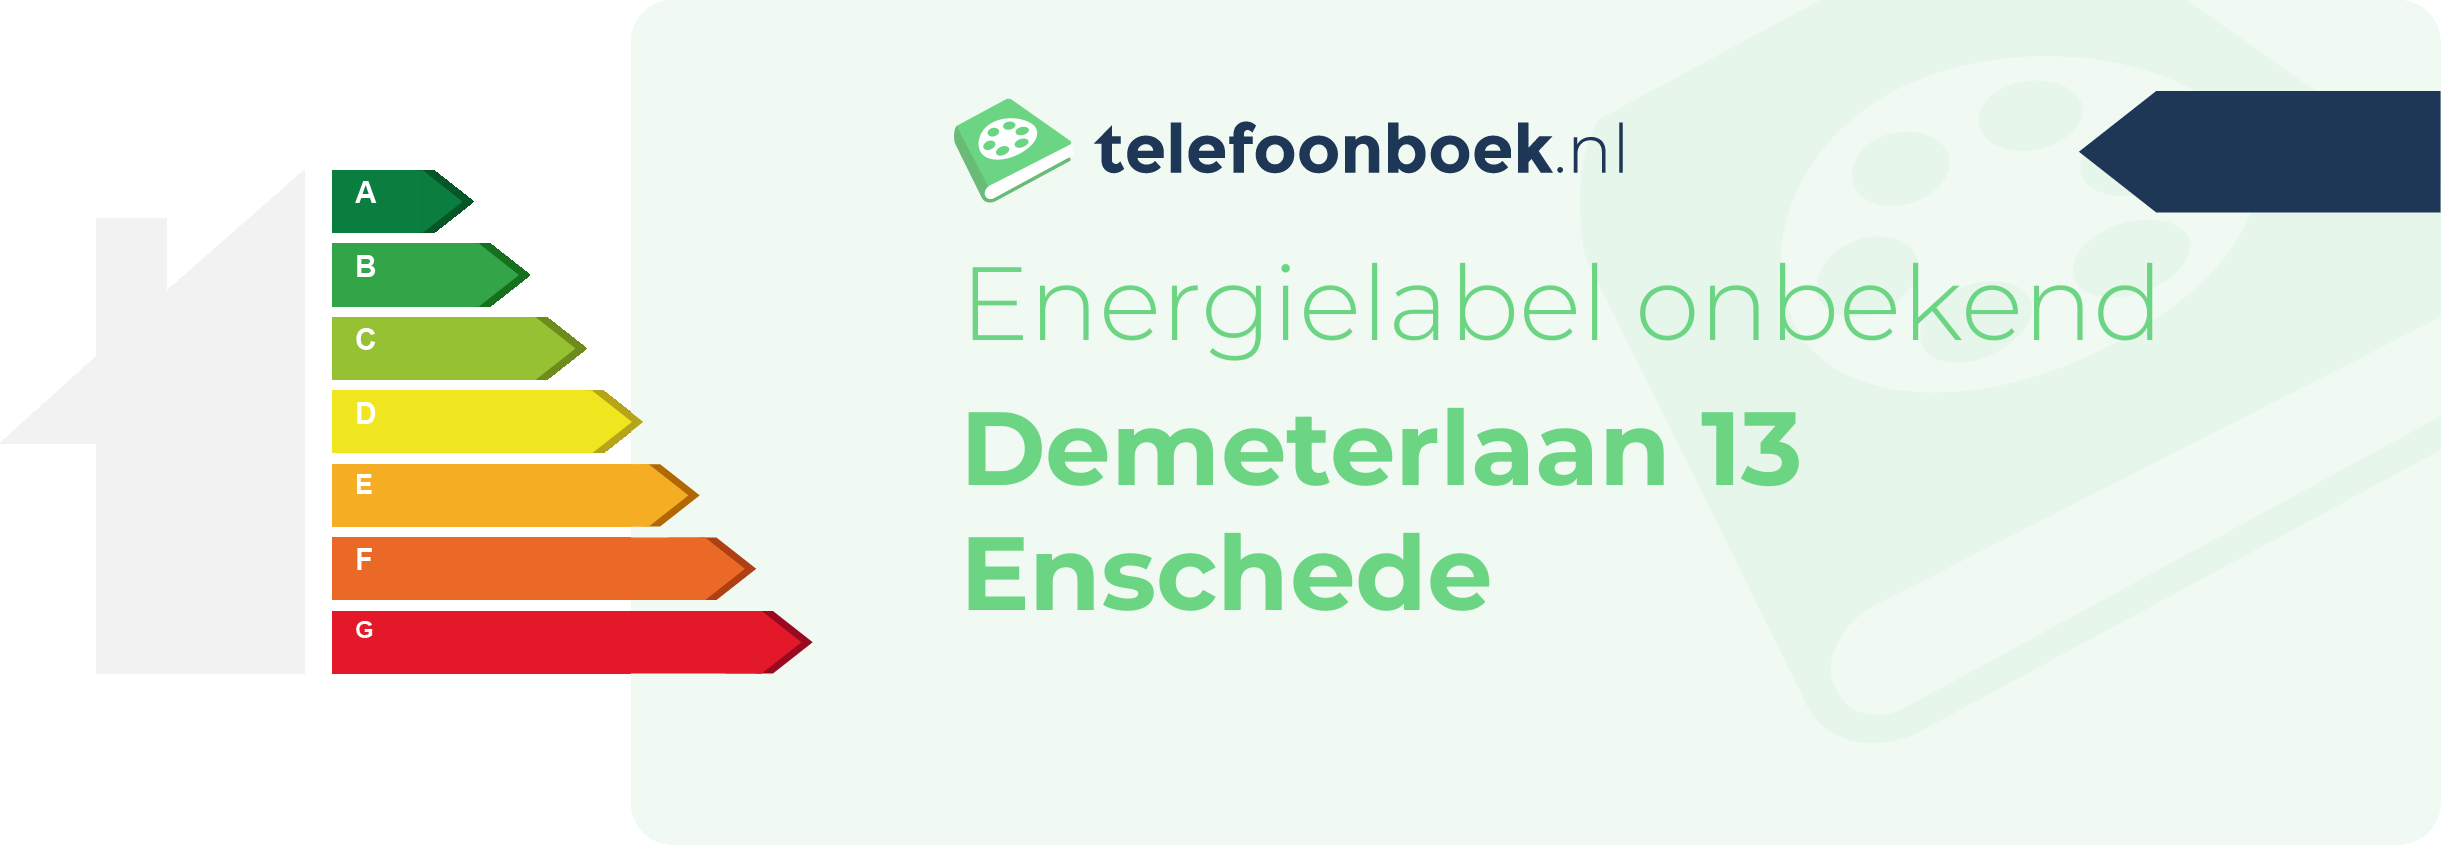 Energielabel Demeterlaan 13 Enschede